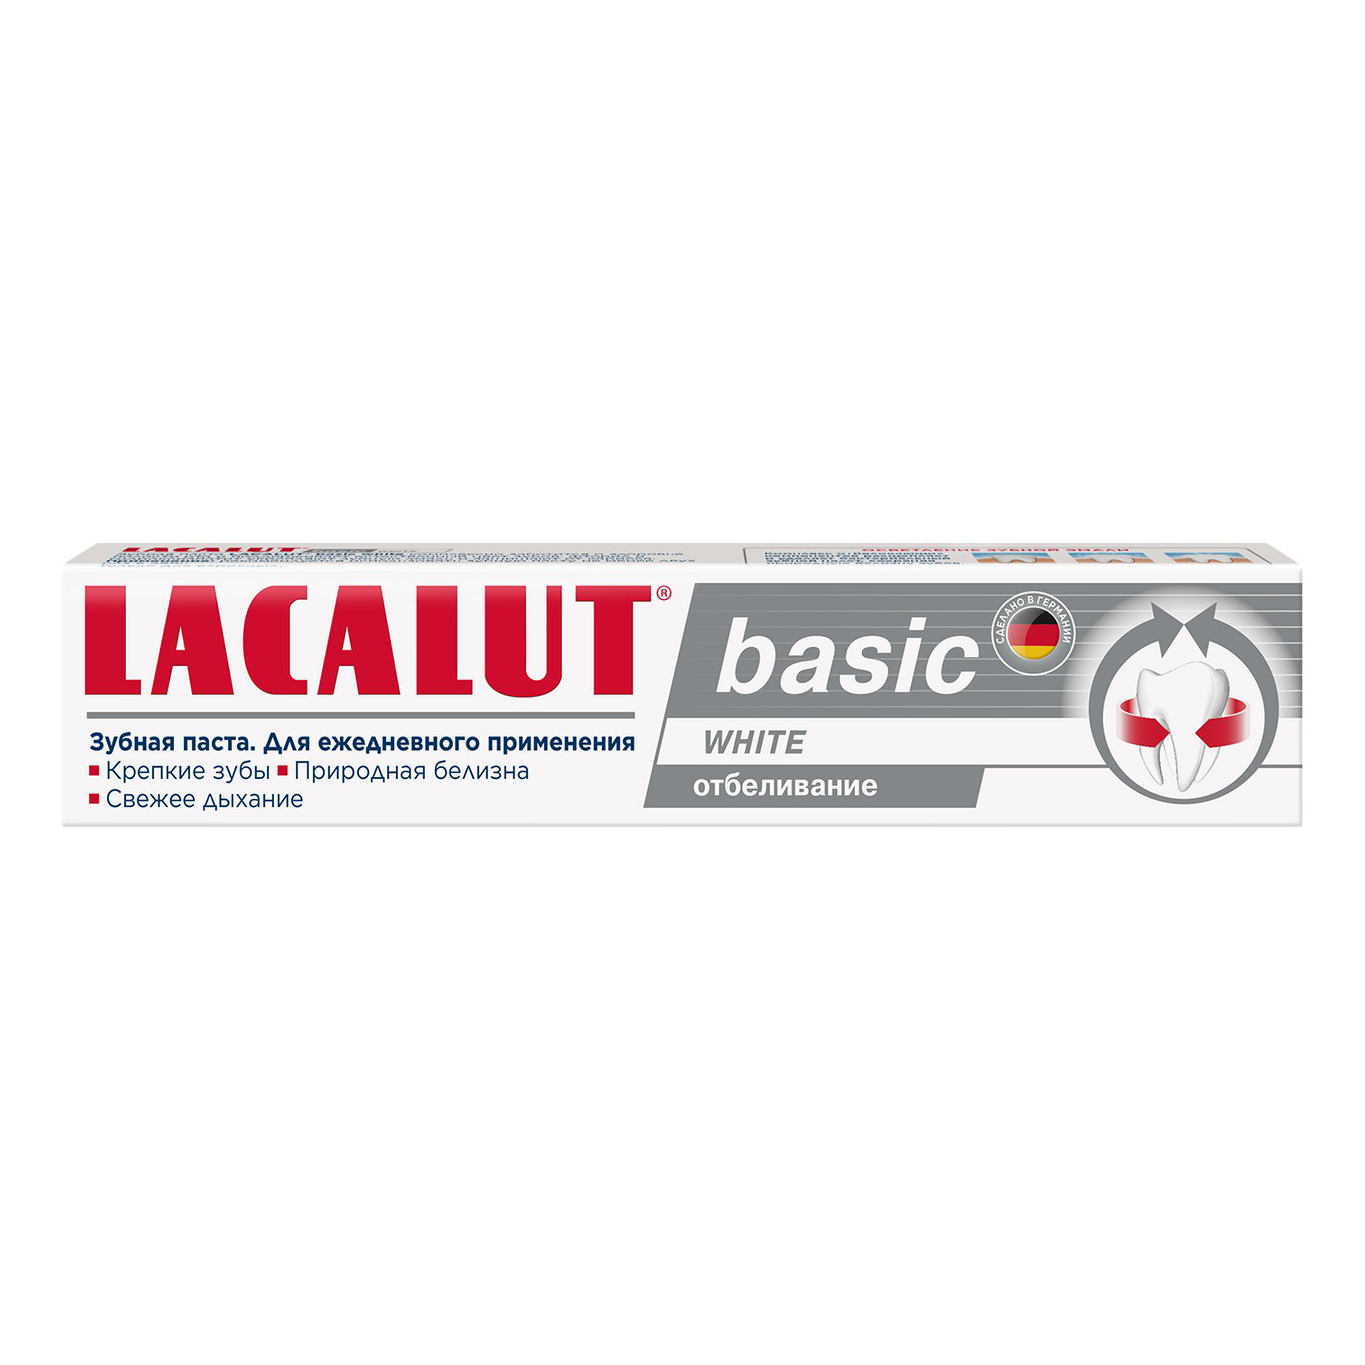 Зубная паста Lacalut Basic White отбеливание 75 мл